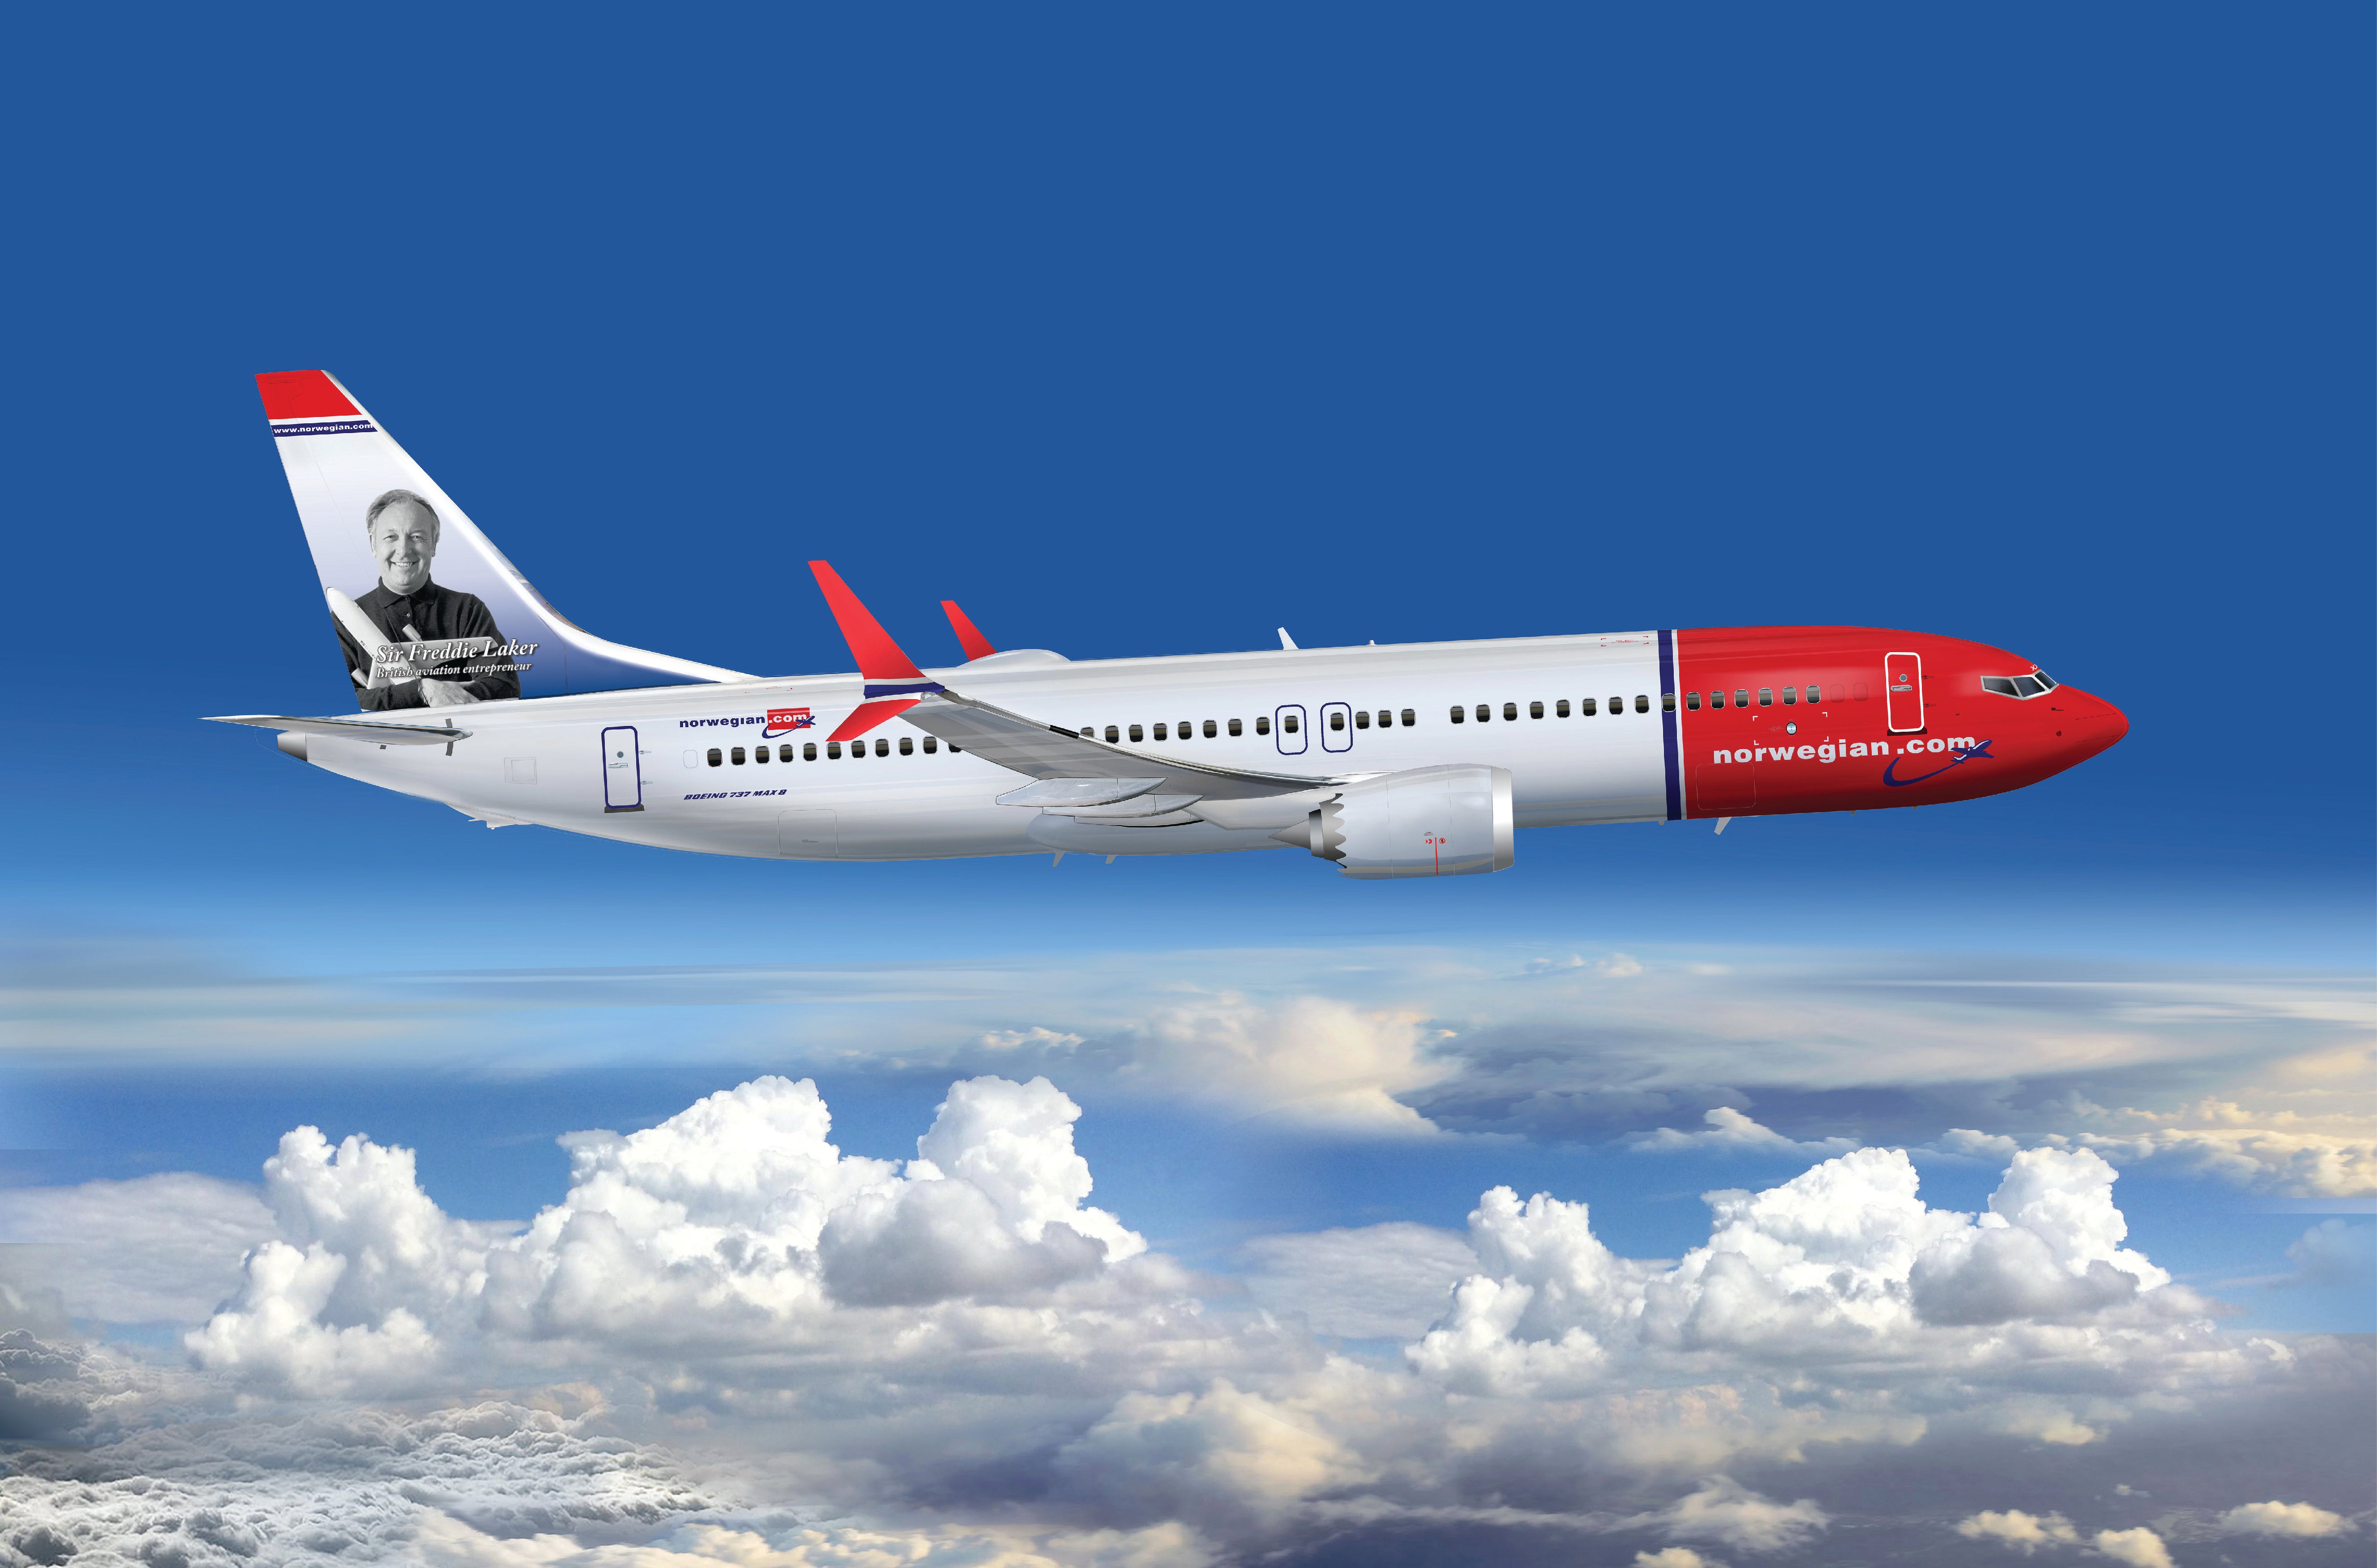 Uncertain destination: Norwegian Boeing 737 Max carrying the image of transatlantic pioneer Sir Freddie Laker